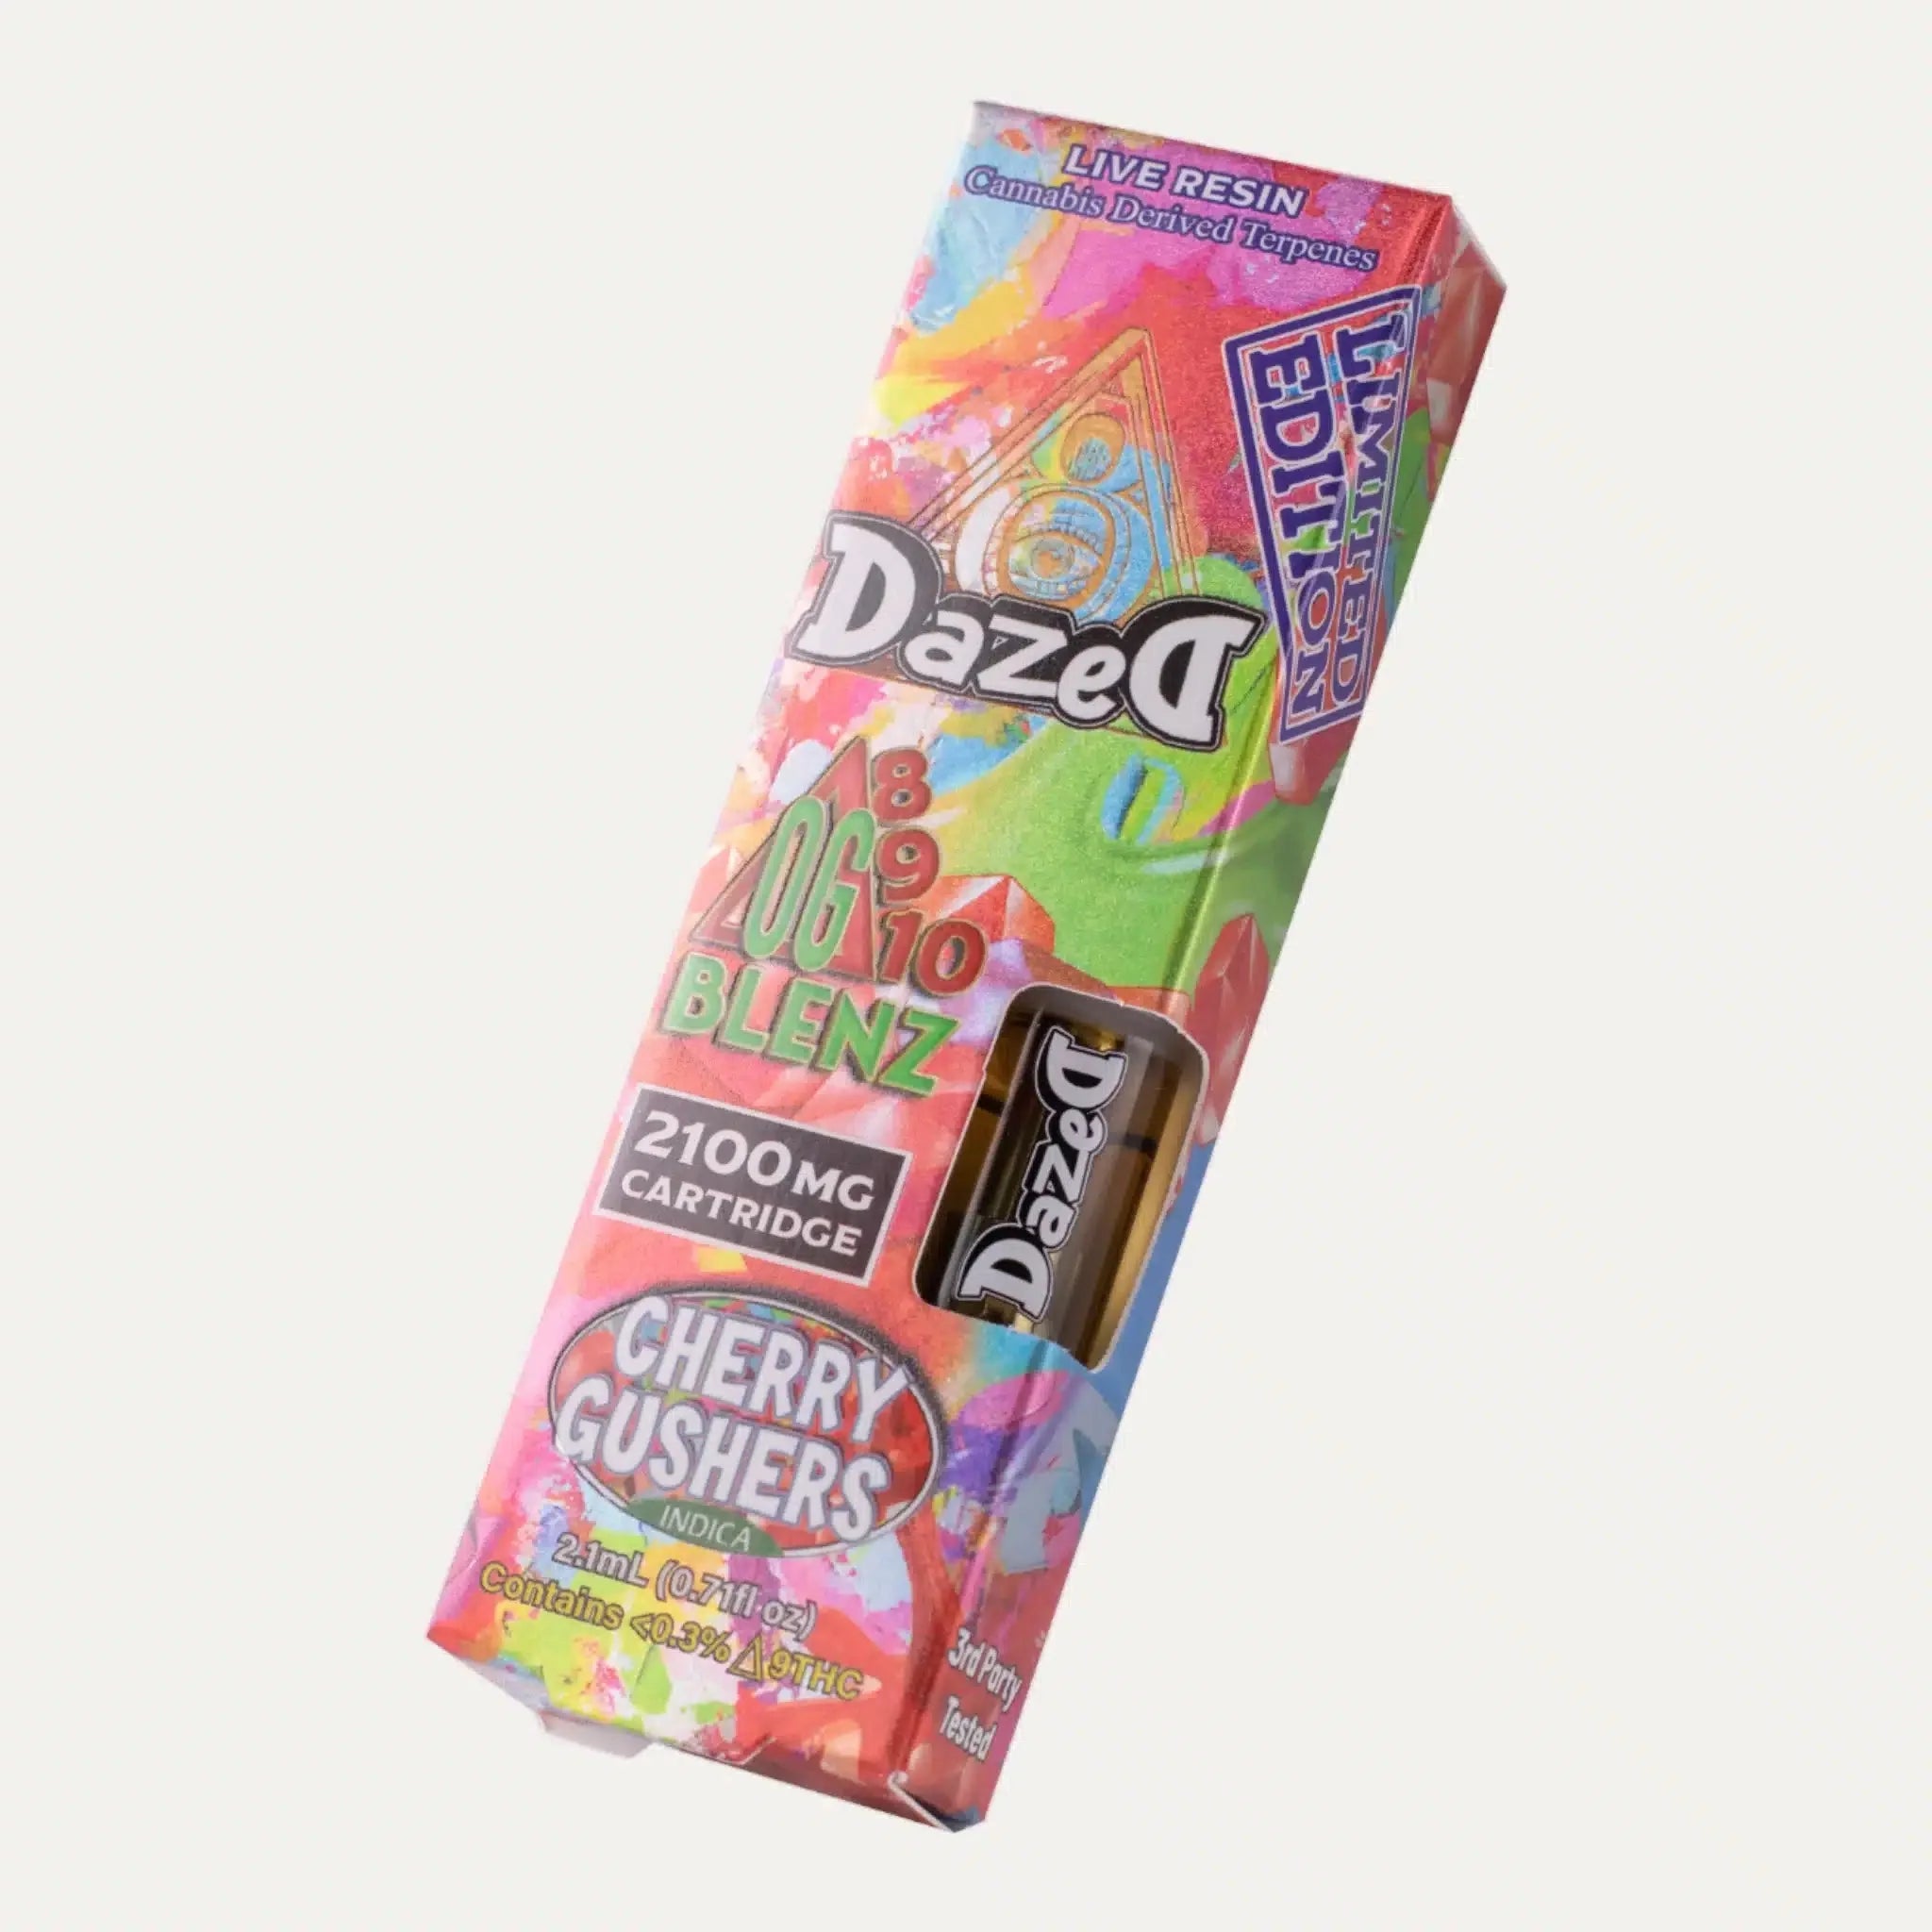 Dazed8 OG Blenz Live Resin 510 Cartridges (2.1g) Best Price